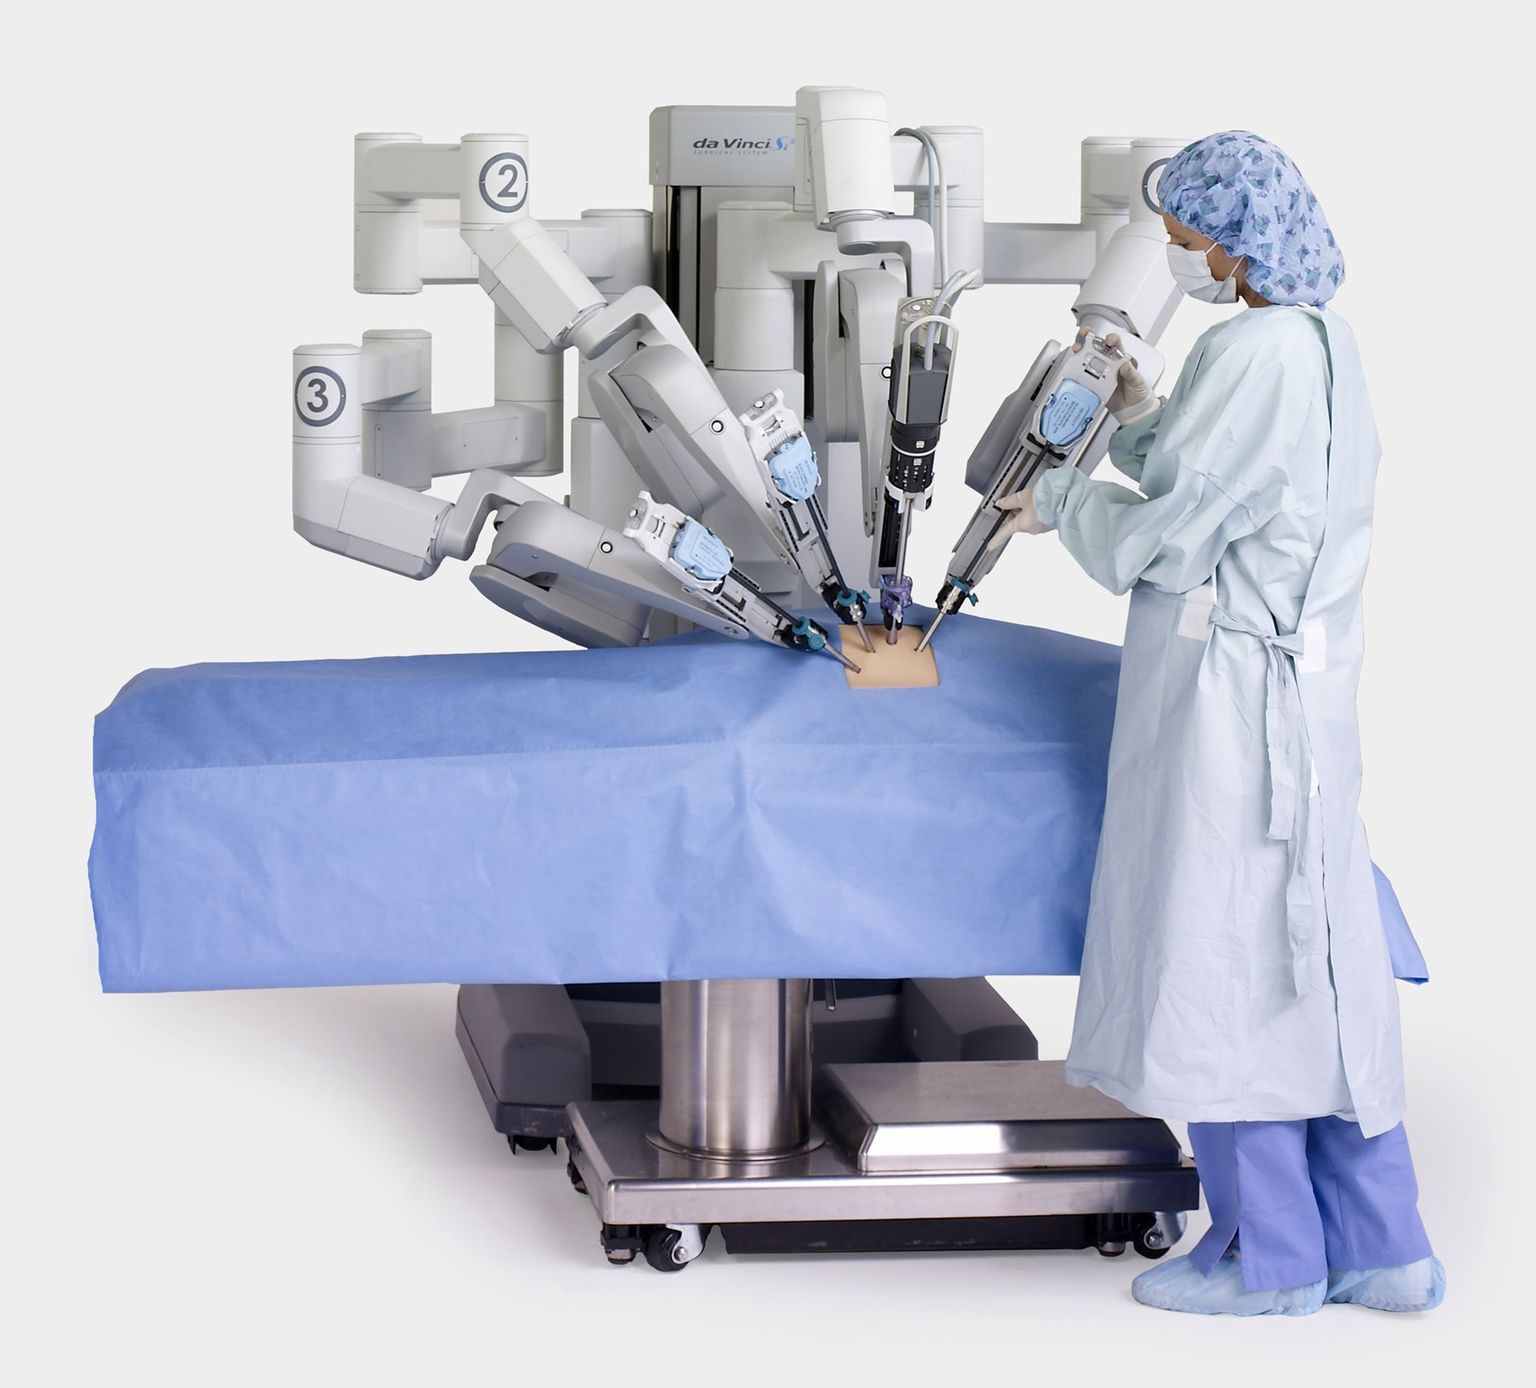 Kuigi robotite kasutamine pole üldises kirurgias midagi uut, ei ole pehmete kudede juures robotite tehtud operatsioonid seni õnnestunud.Nüüd tegid teadlased aga olulise edusammu. Pilt on illustreeriv.